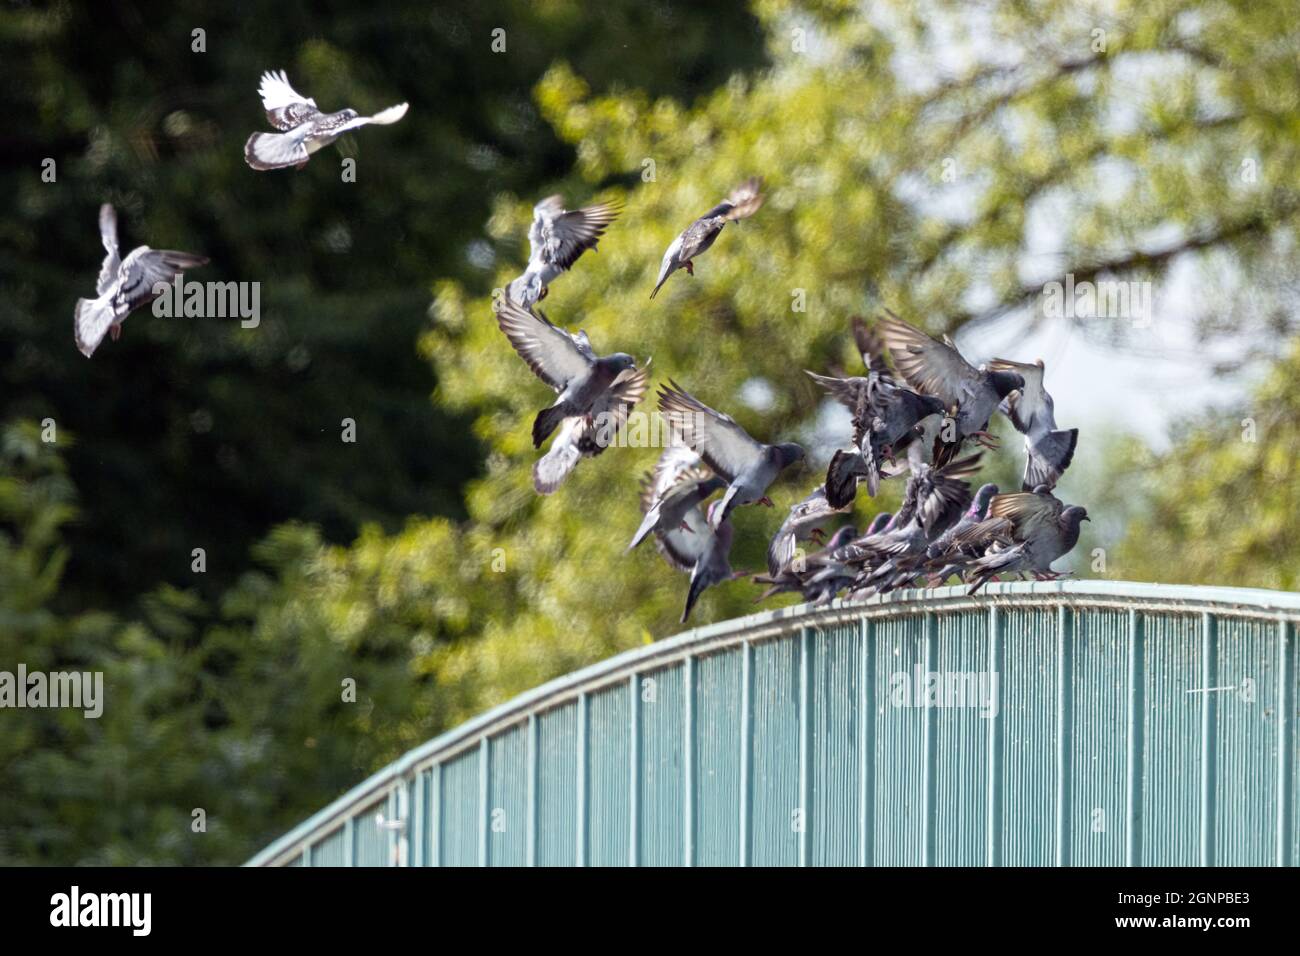 Pigeon domestique, pigeon féral (Columba livia F. domestica), de nombreux pigeons atterrissant sur une rampe de pont, Allemagne, Bavière Banque D'Images